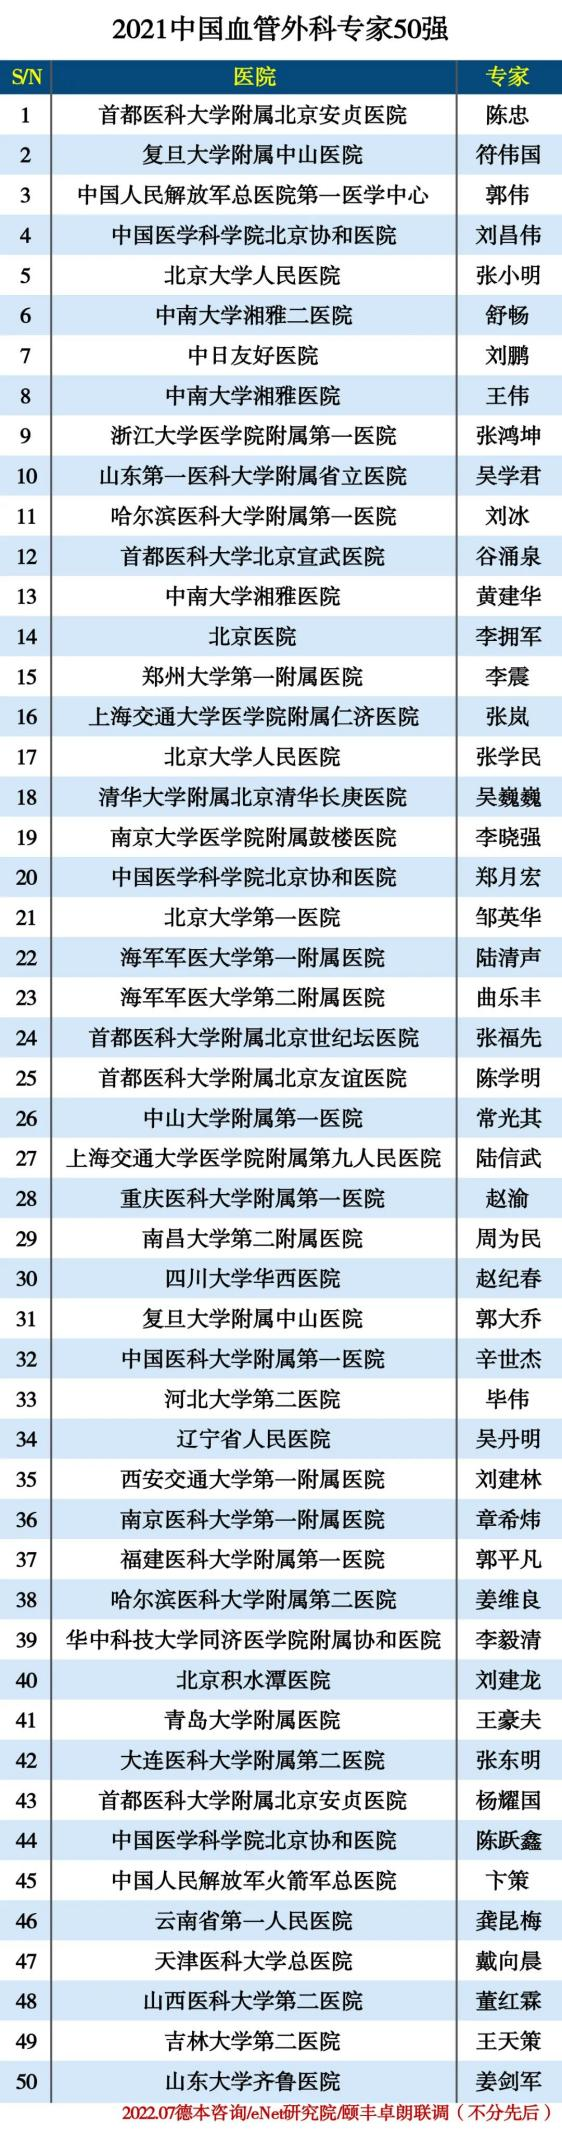 全国第 29 位！南昌大学二附院血管外科周为民教授入选 2021 中国血管外科专家 50 强